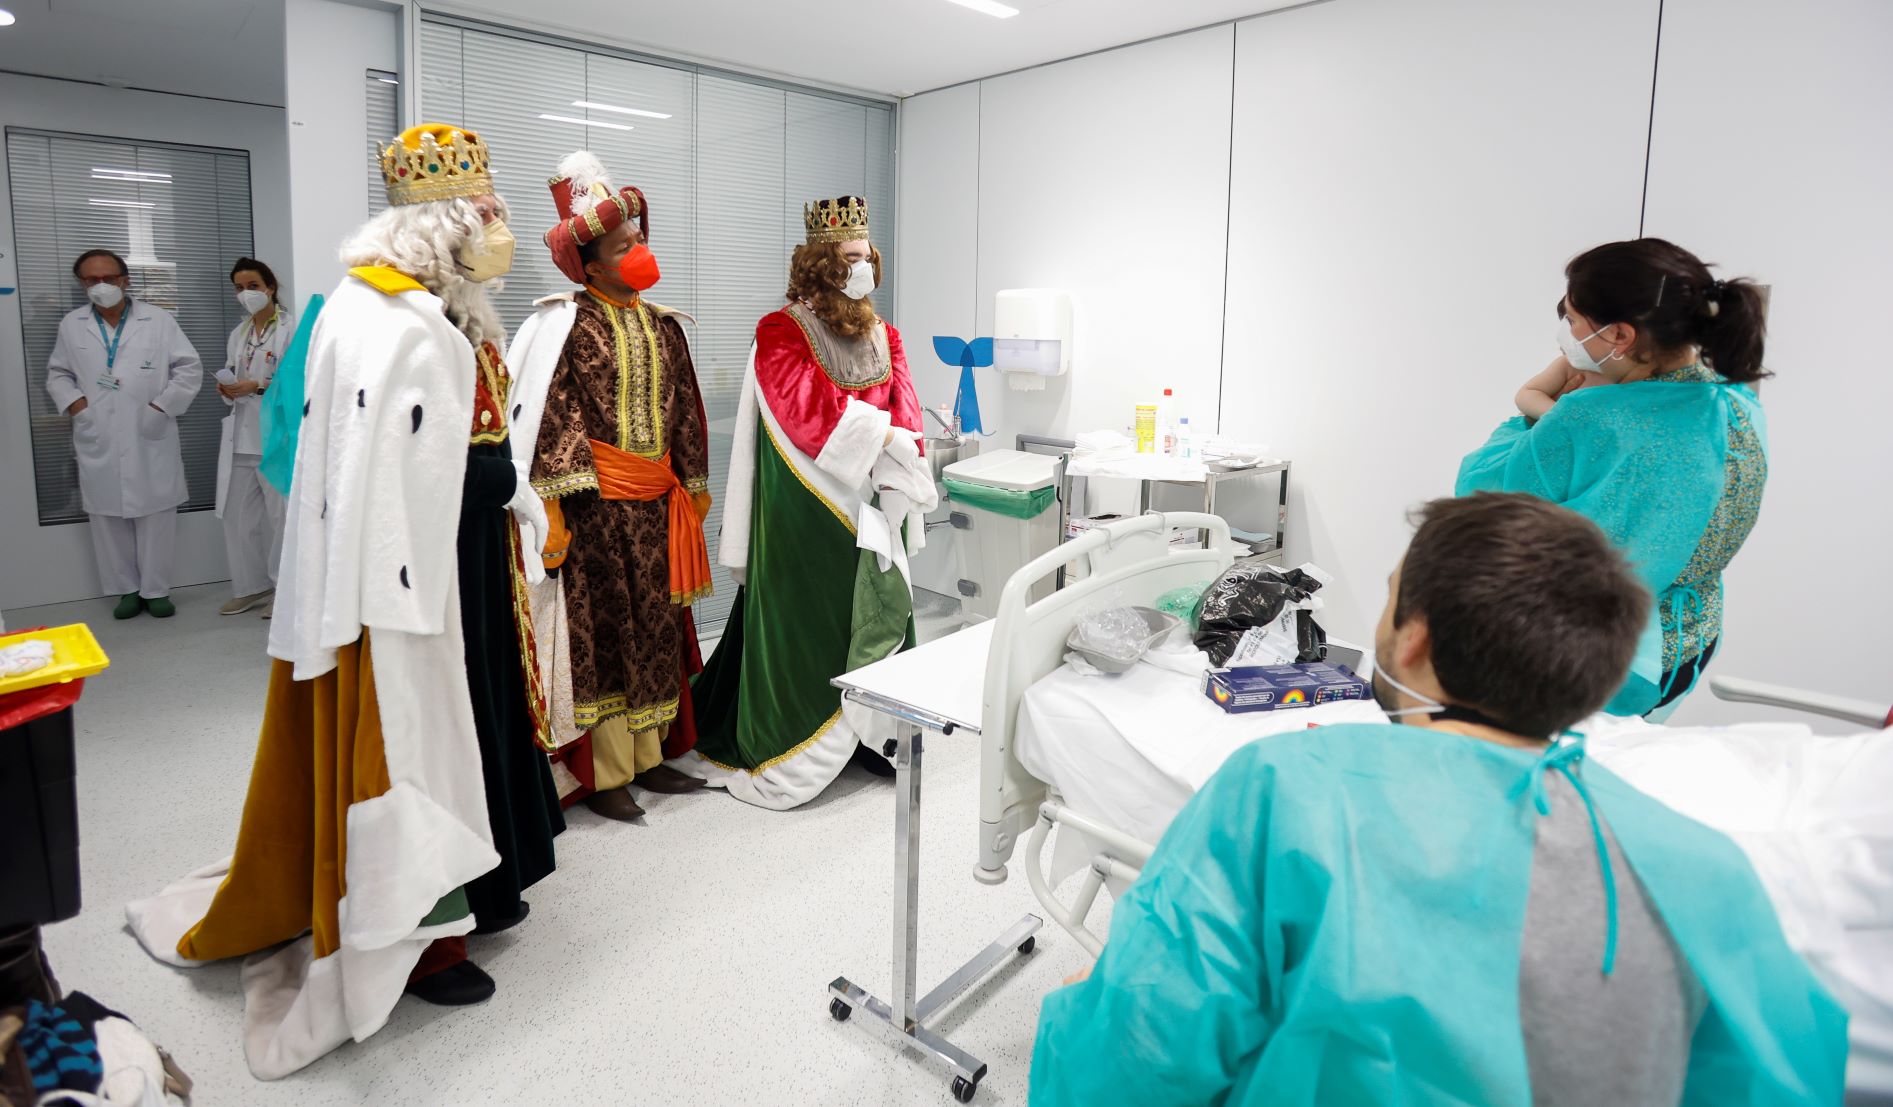 Los niños hospitalizados en el hospital Quirón de Pozuelo reciben la visita de los Reyes Magos